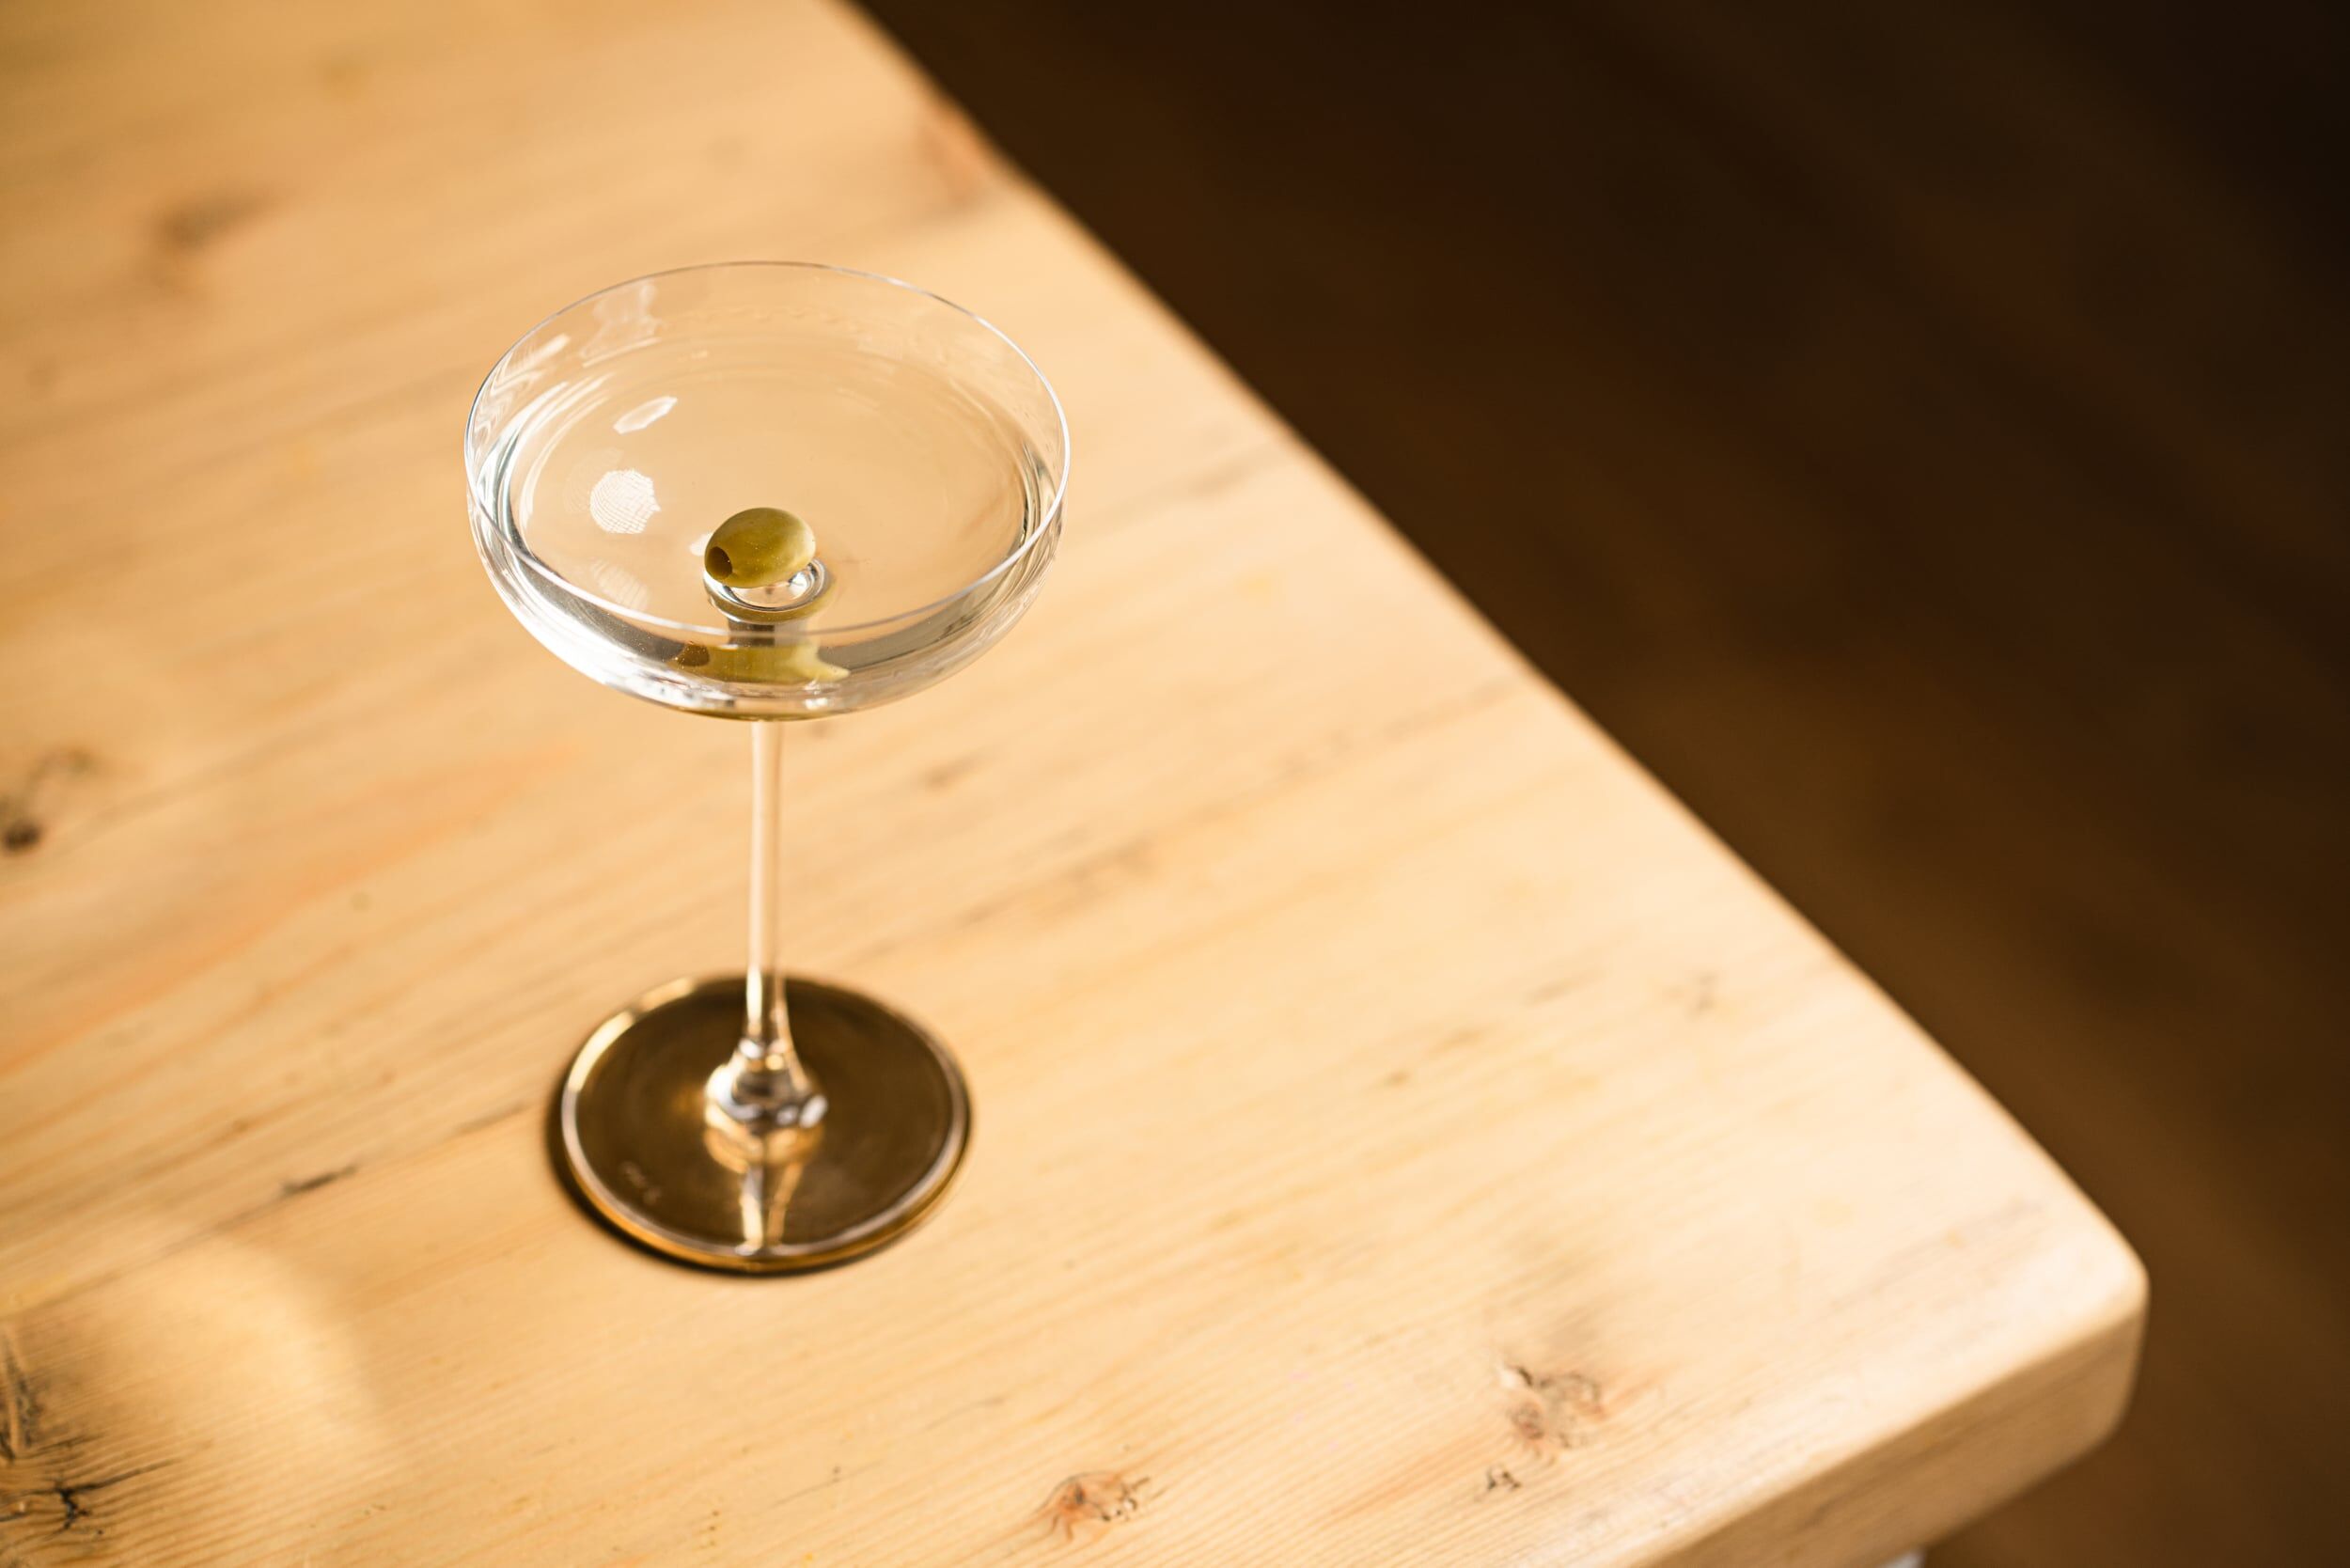 vodka-martini-recipe